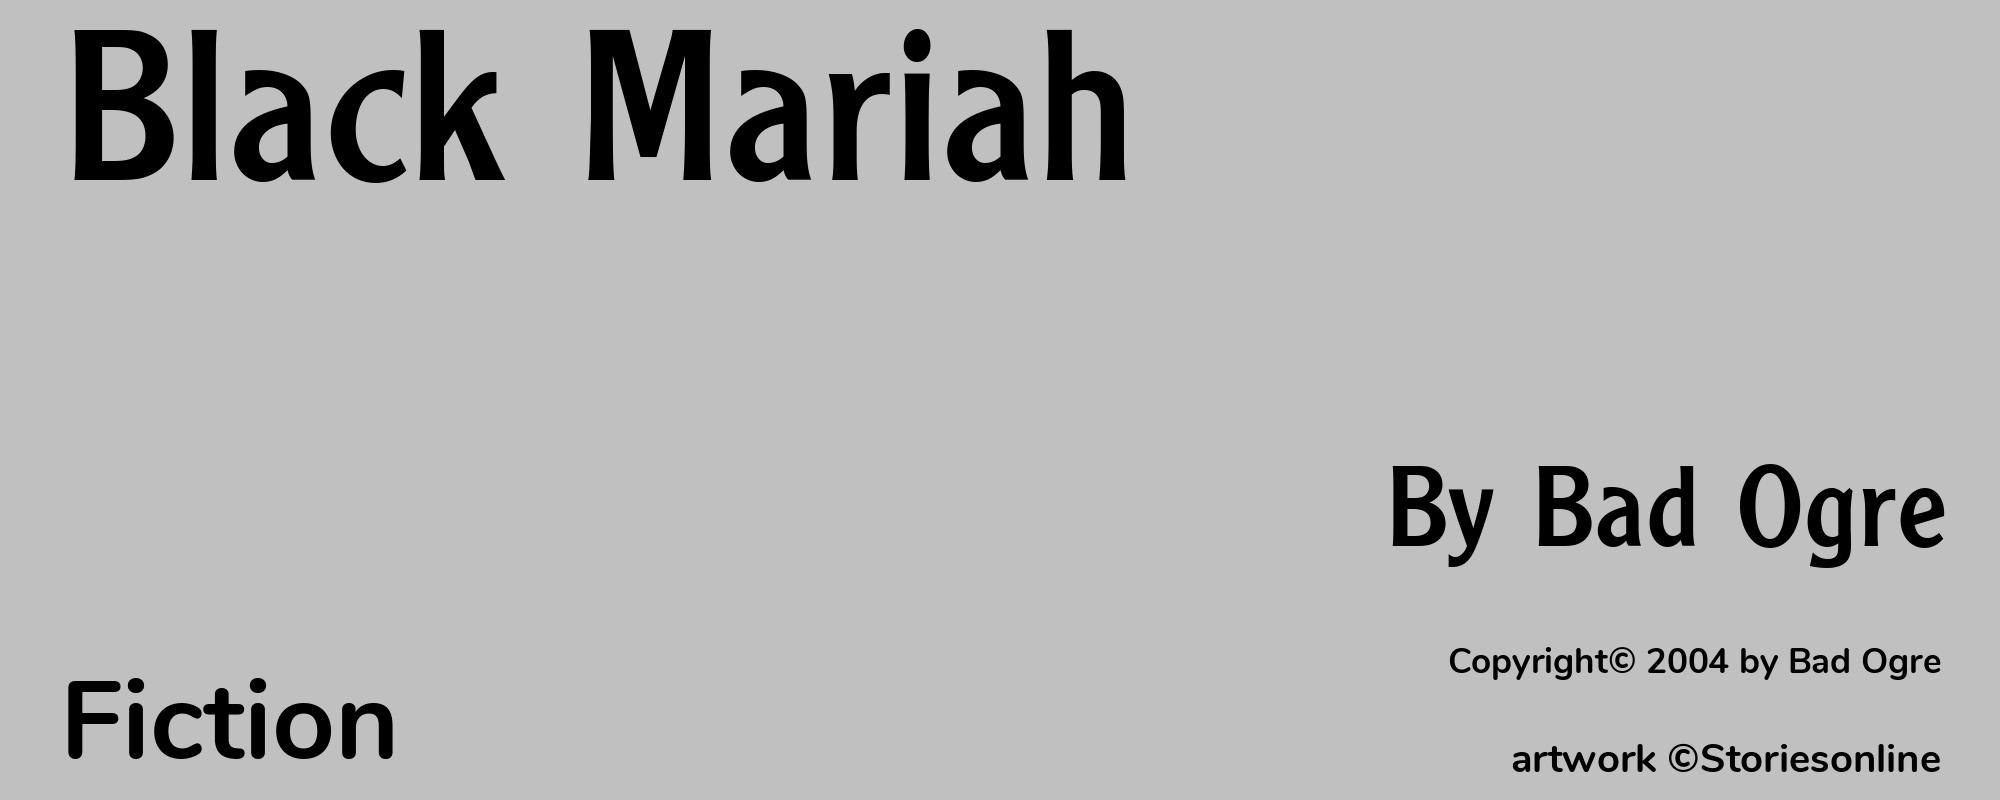 Black Mariah - Cover